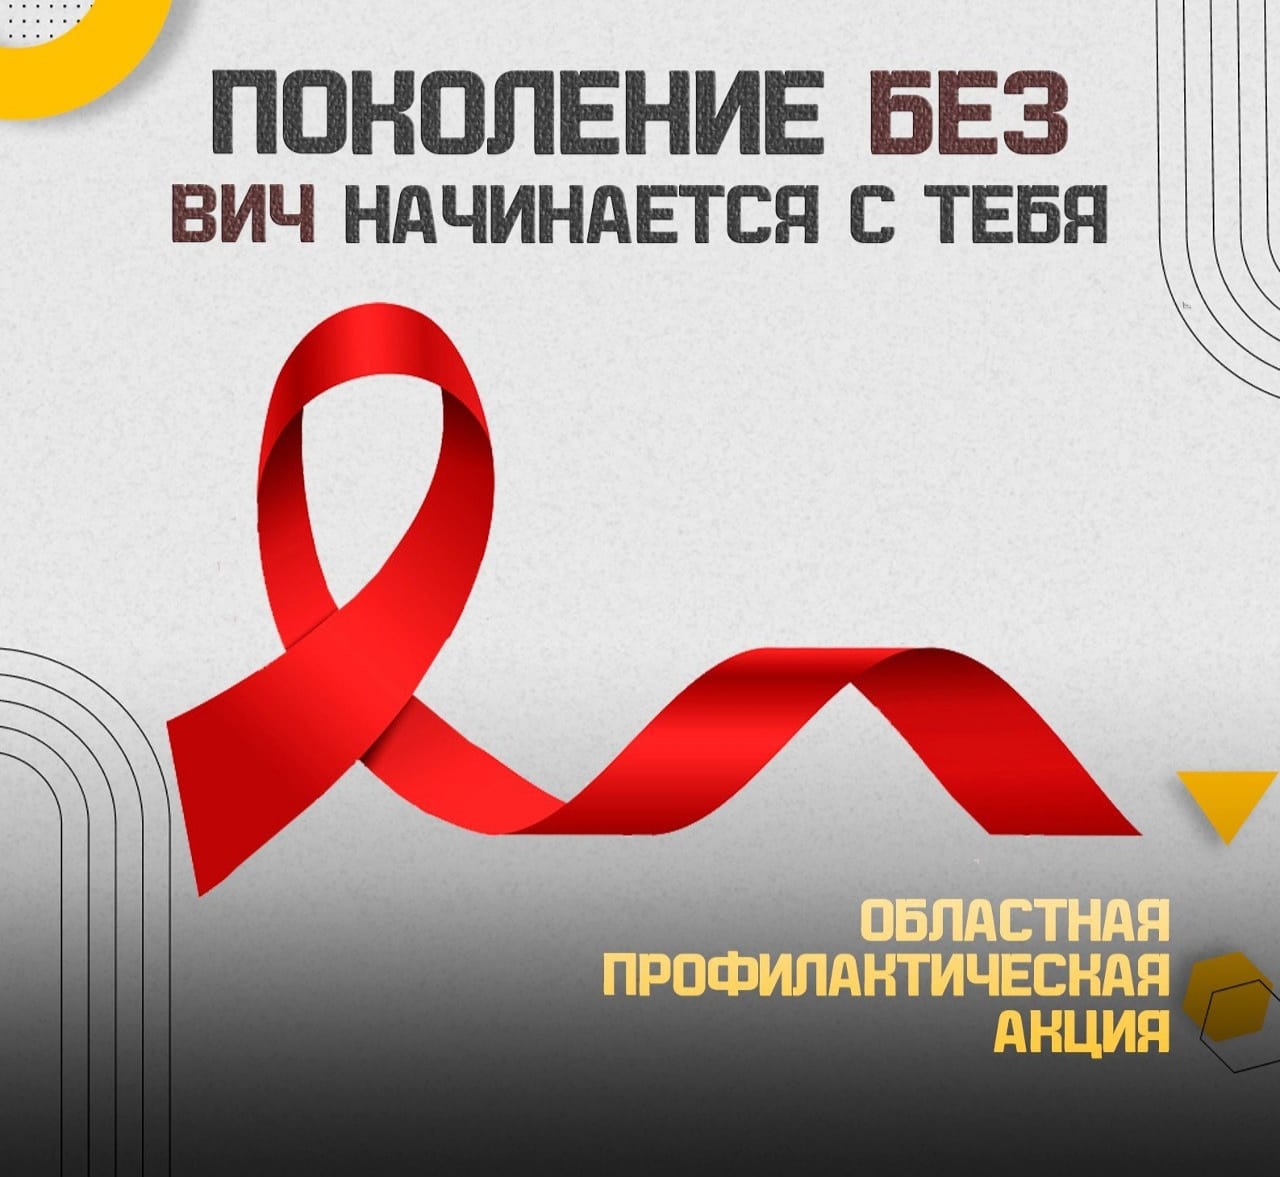 В Ярославской области стартовала профилактическая акция, посвященная Международному дню памяти жертв СПИДа